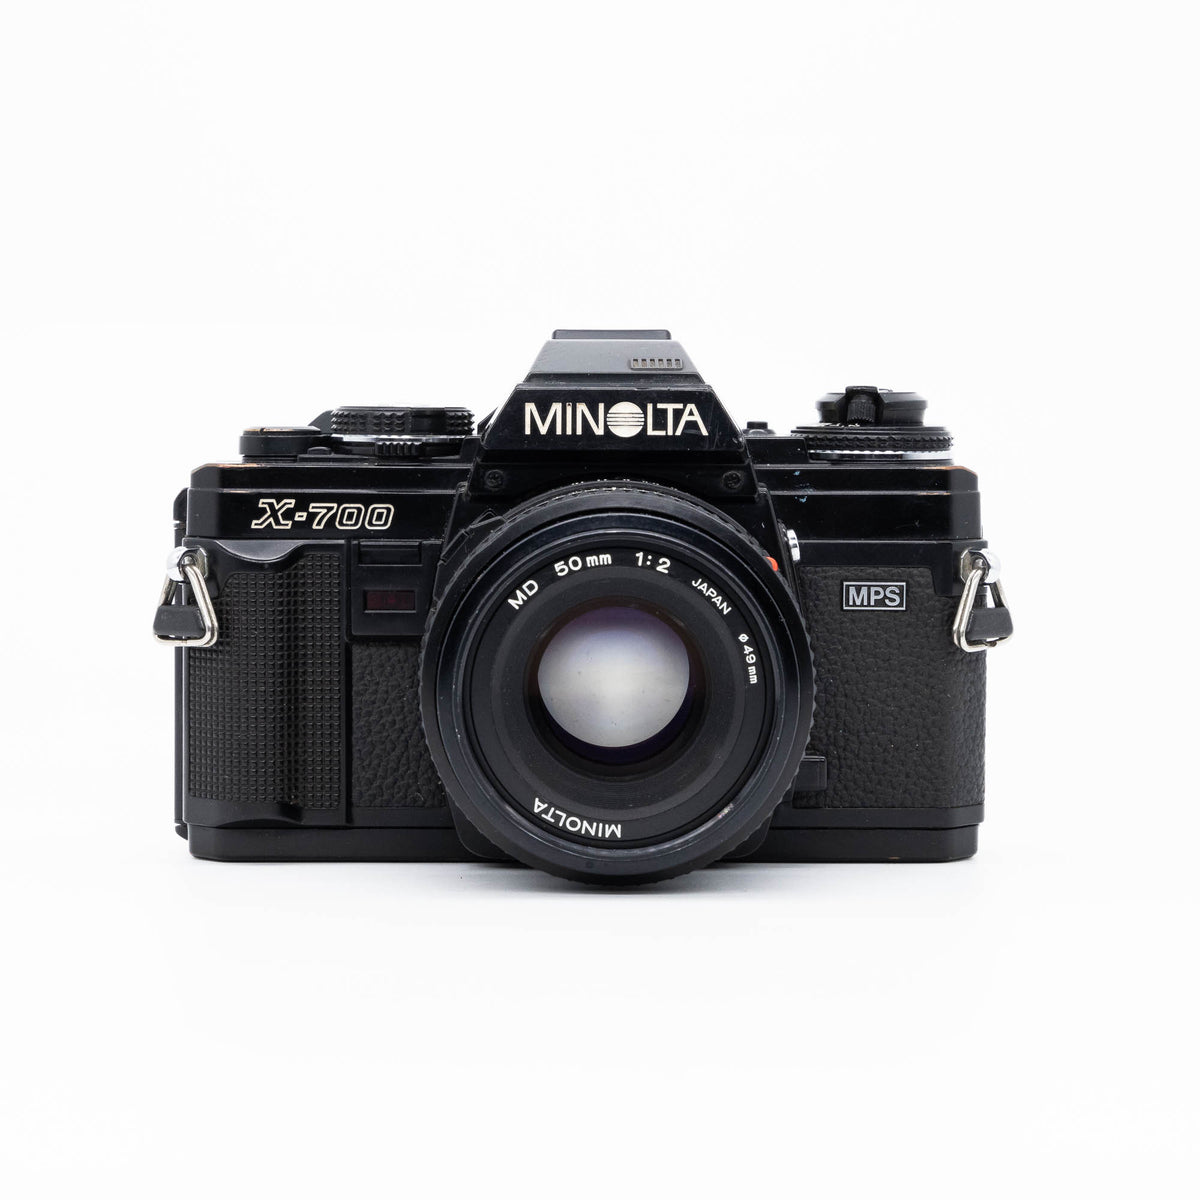 Minolta X-700 & 50mm f/2.0